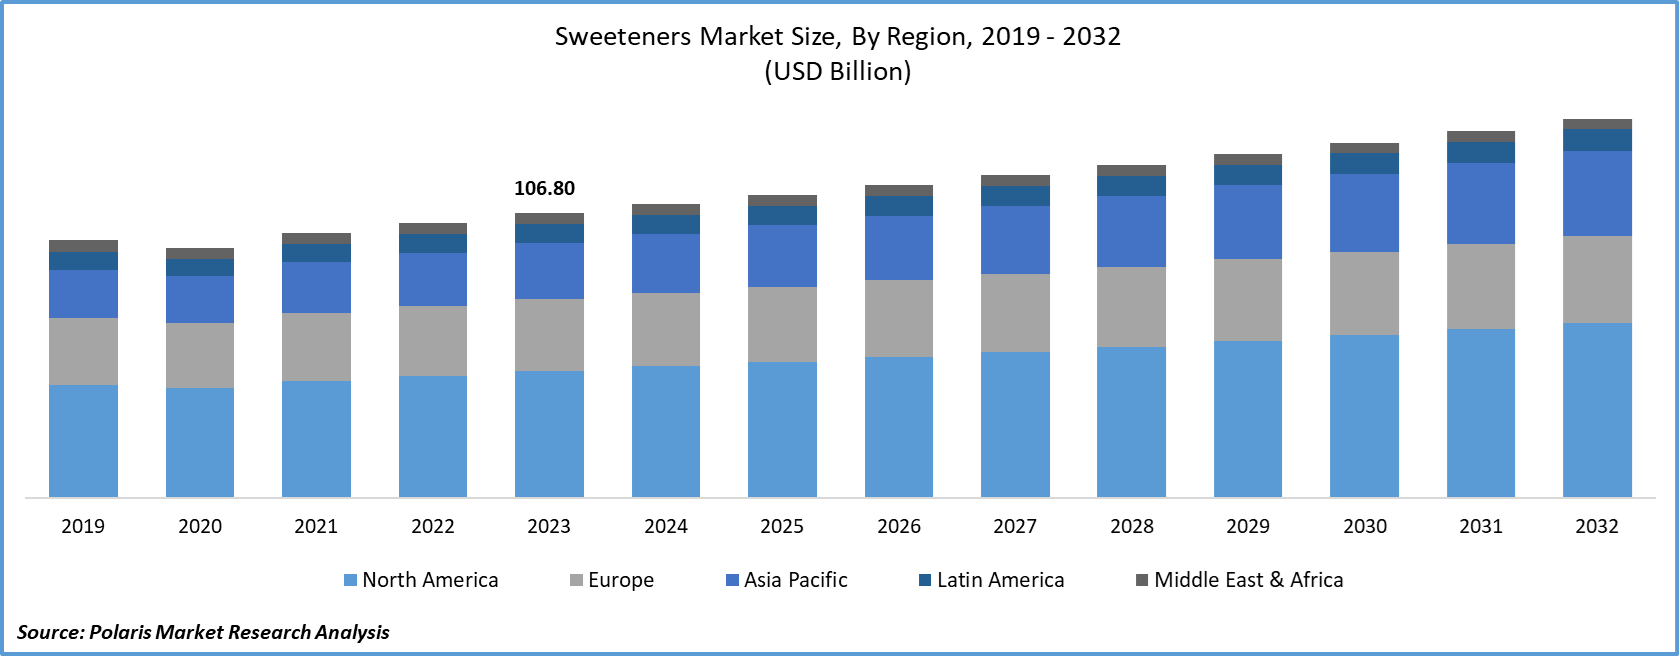 Sweeteners Market Size